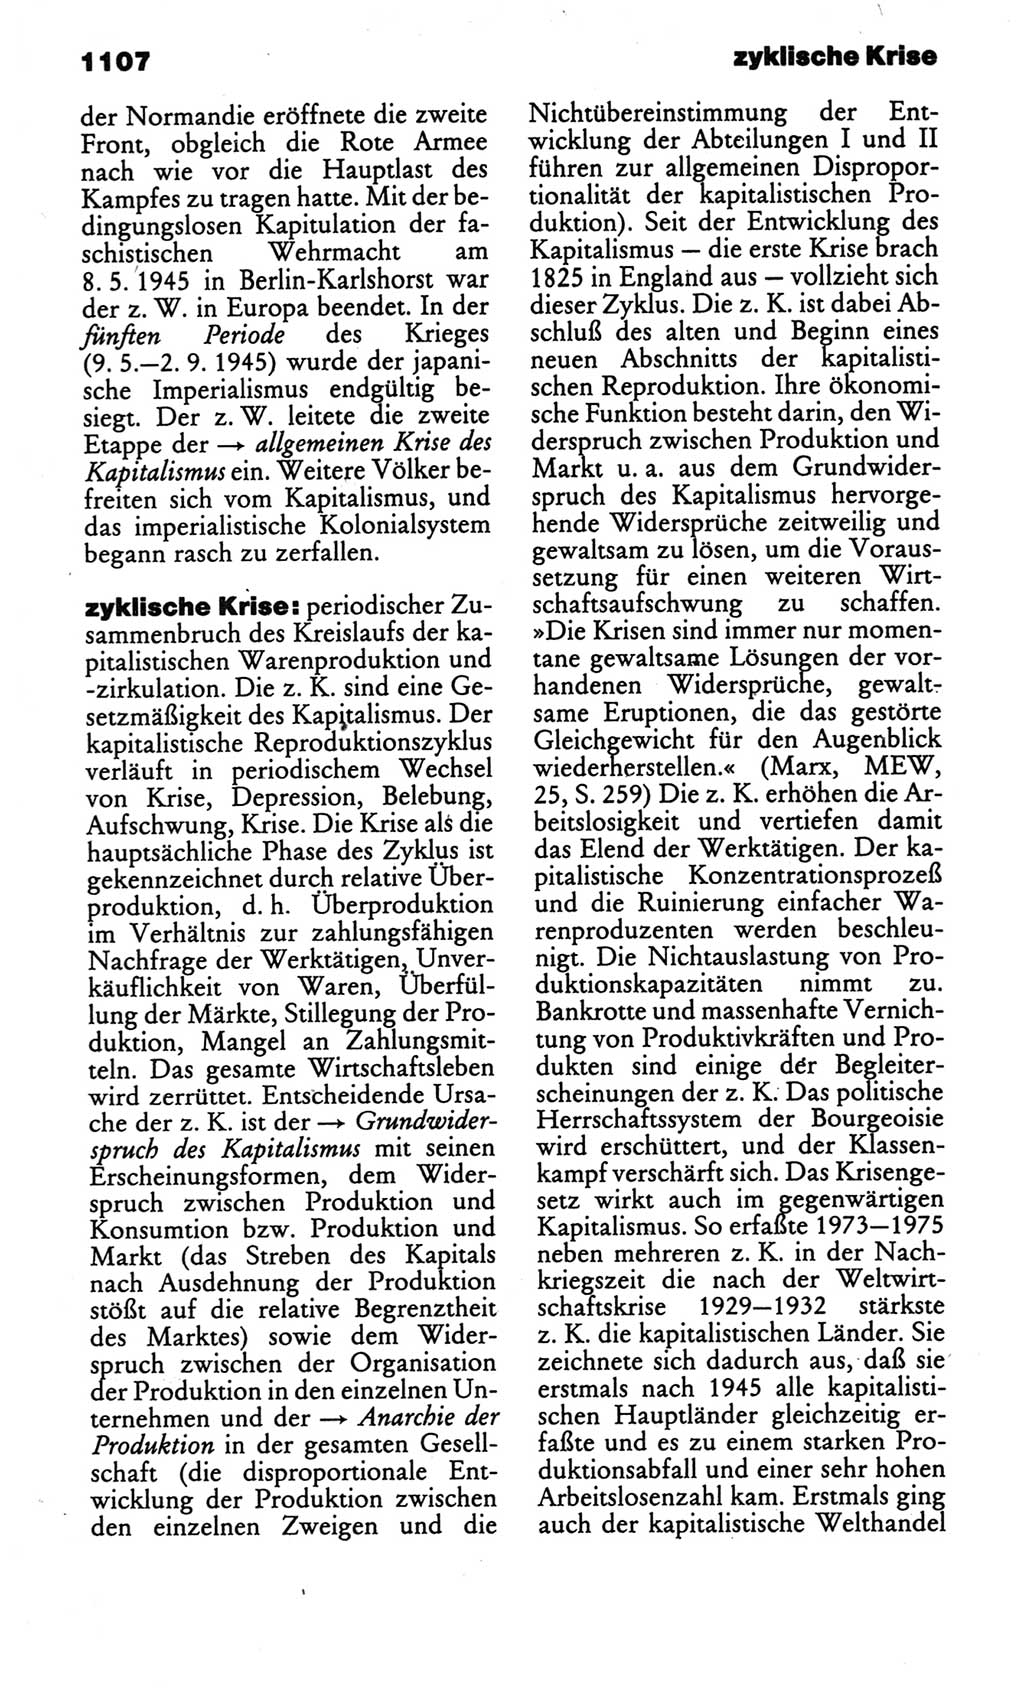 Kleines politisches Wörterbuch [Deutsche Demokratische Republik (DDR)] 1986, Seite 1107 (Kl. pol. Wb. DDR 1986, S. 1107)